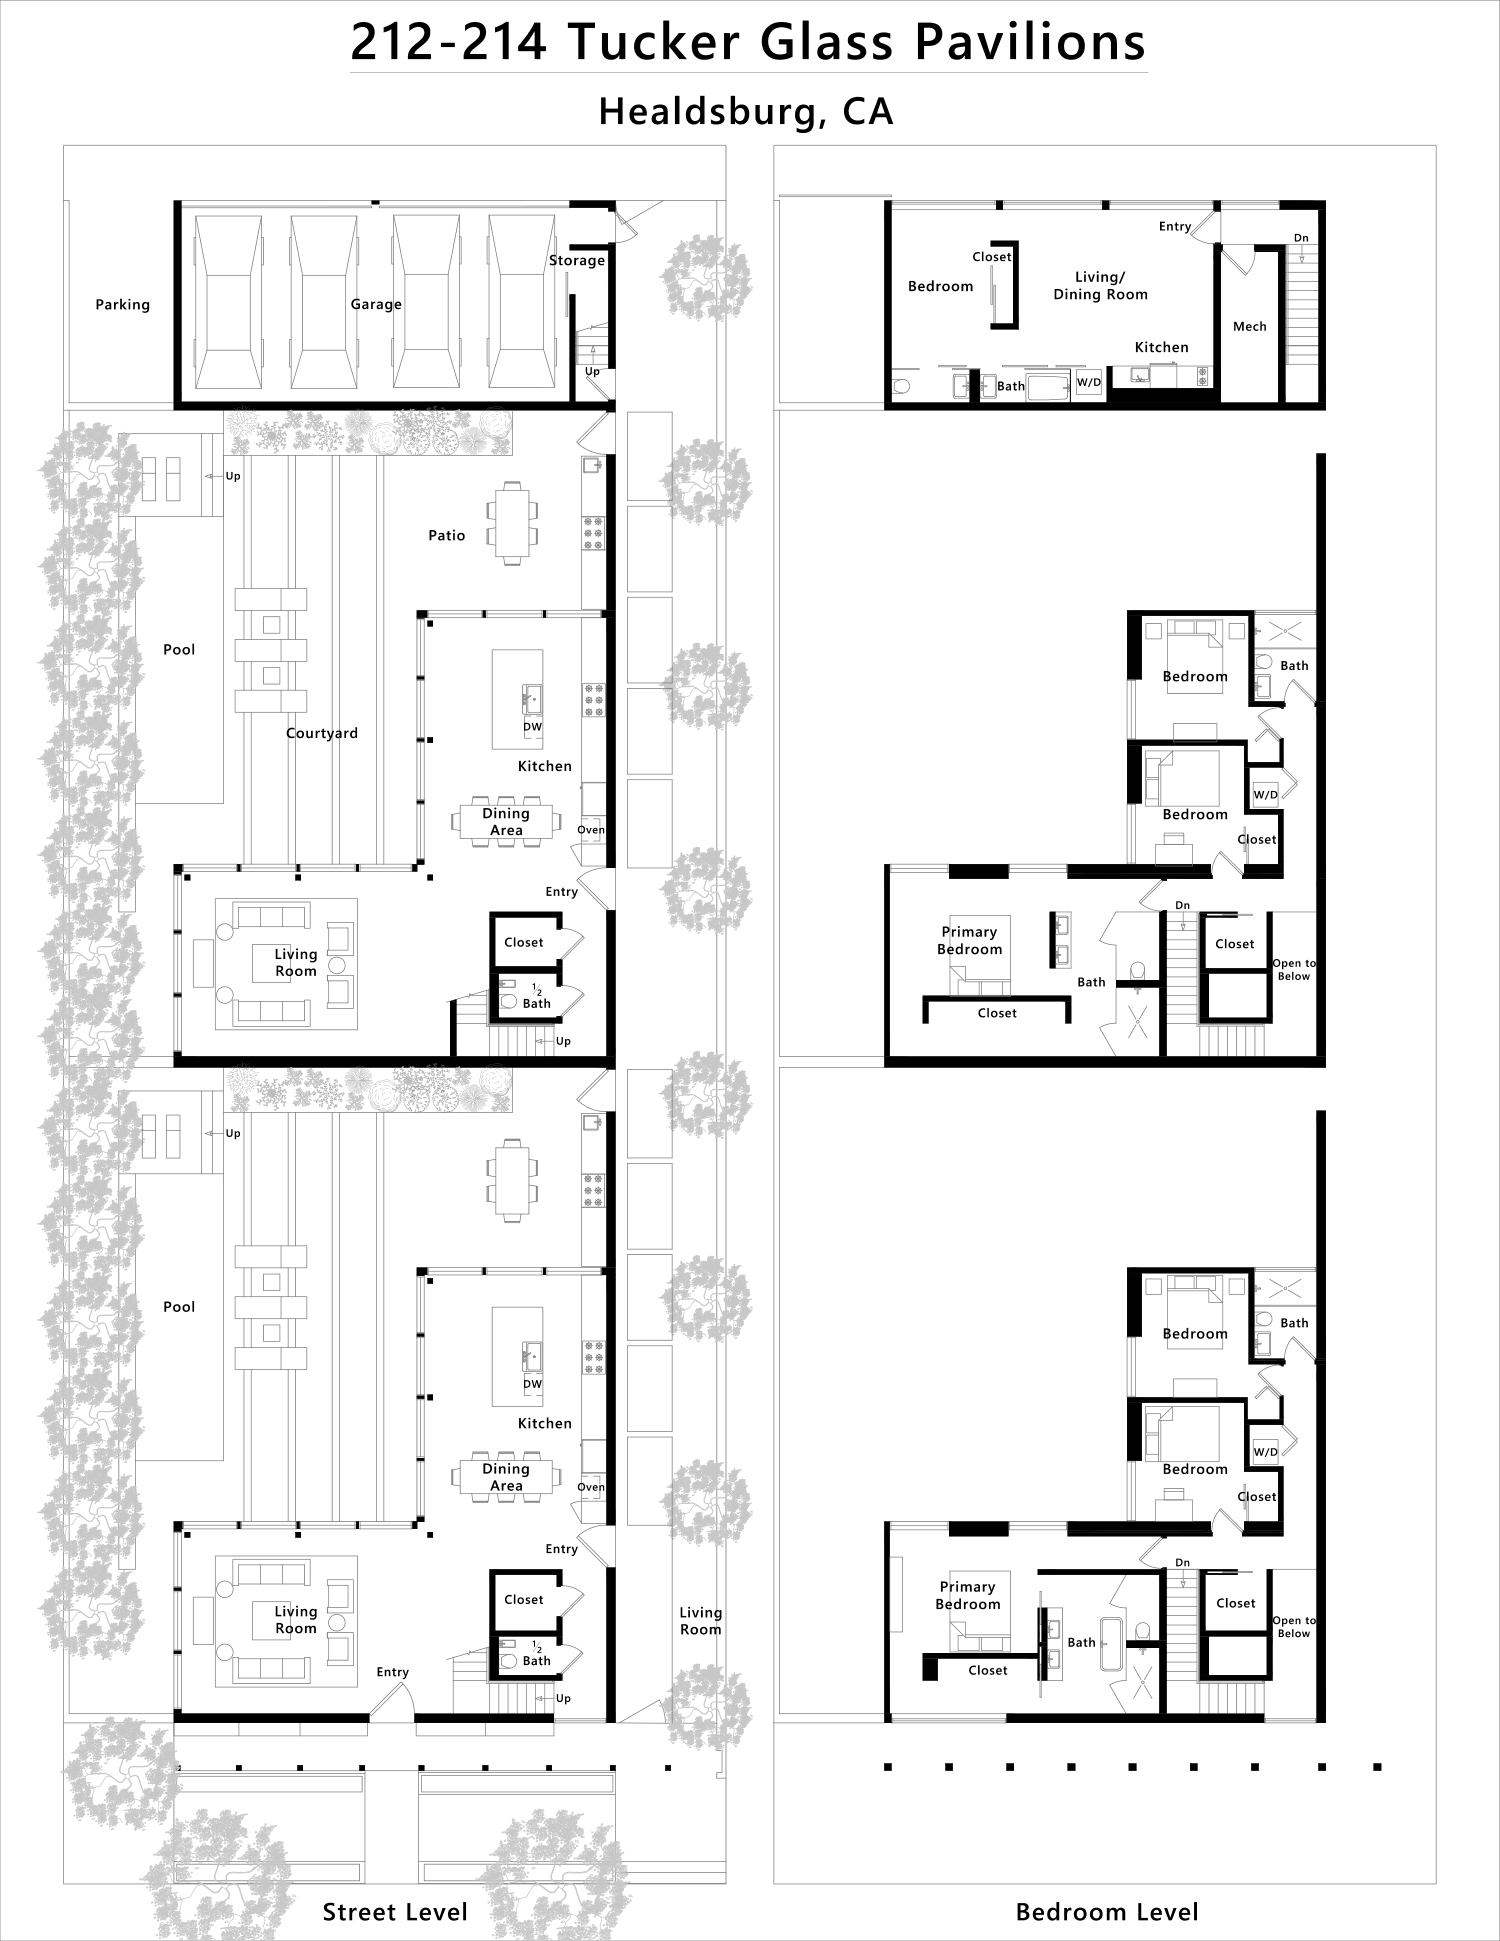 schematic floor plans